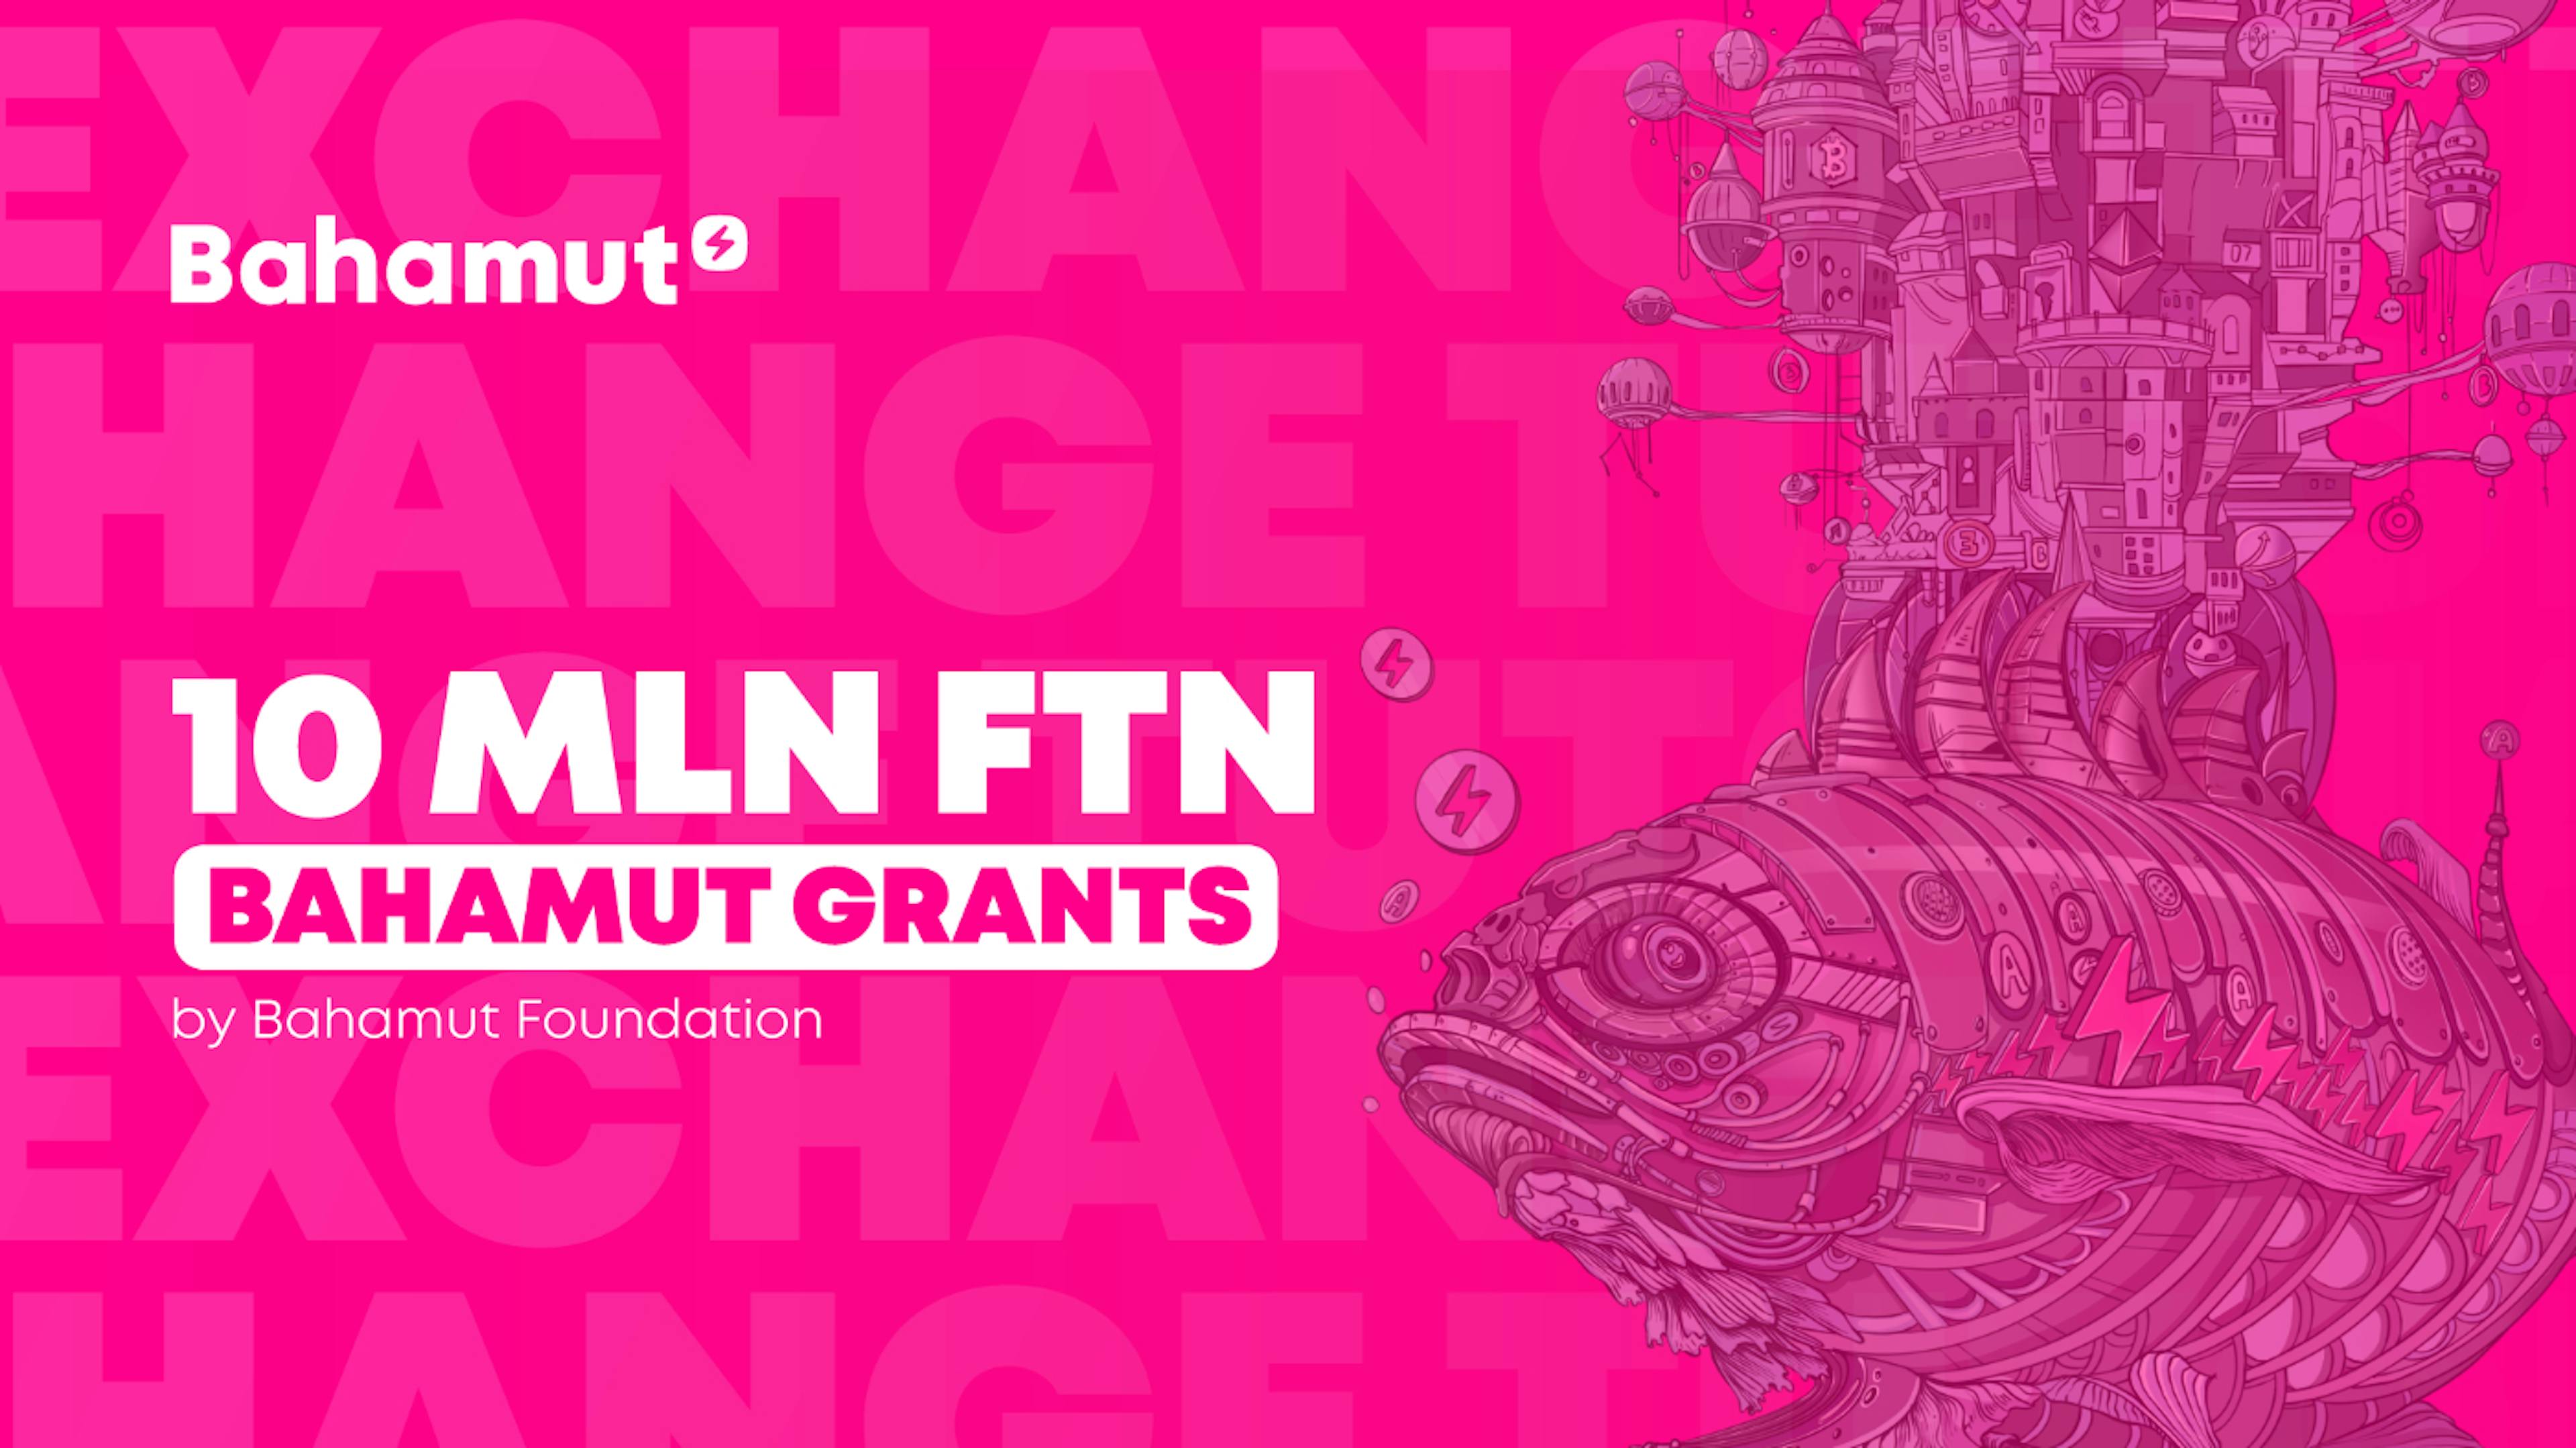 featured image - La Fondation Bahamut annonce le lancement d'un programme de subventions FTN Bahamut de 10 millions de dollars pour le développement